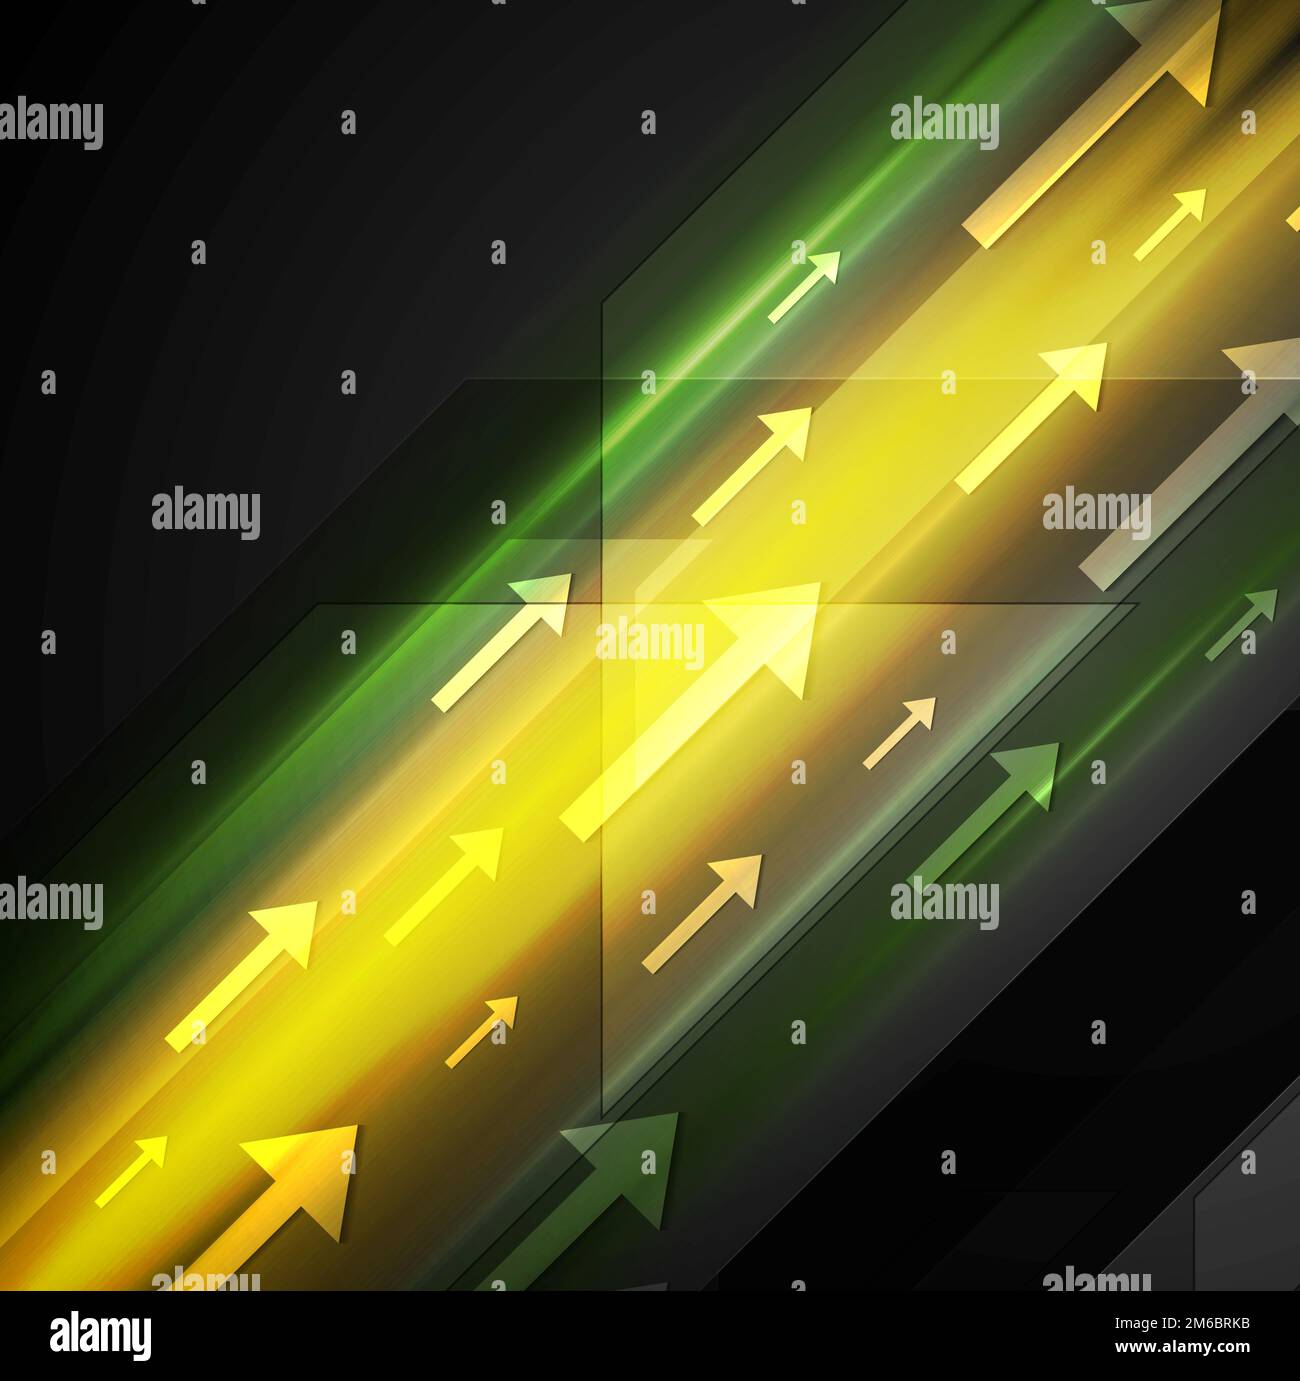 Arrière-plan hi-tech jaune et vert lumineux avec flèches Banque D'Images